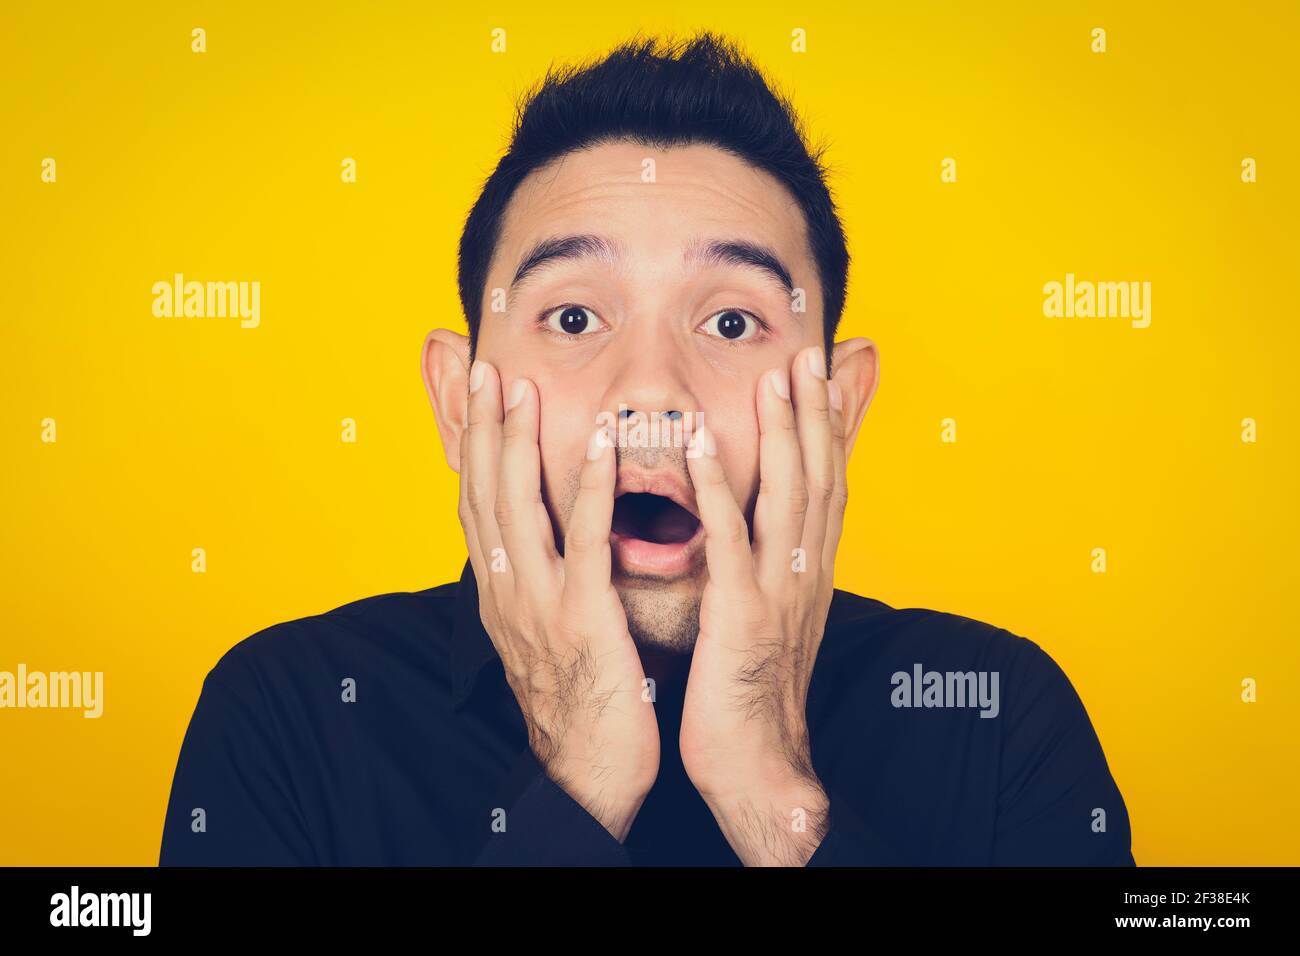 Ein Mann, der schockiert und verängstigt Gesicht, Gefühl und Emotion Konzept - vintage Ton-Effekt Stockfoto